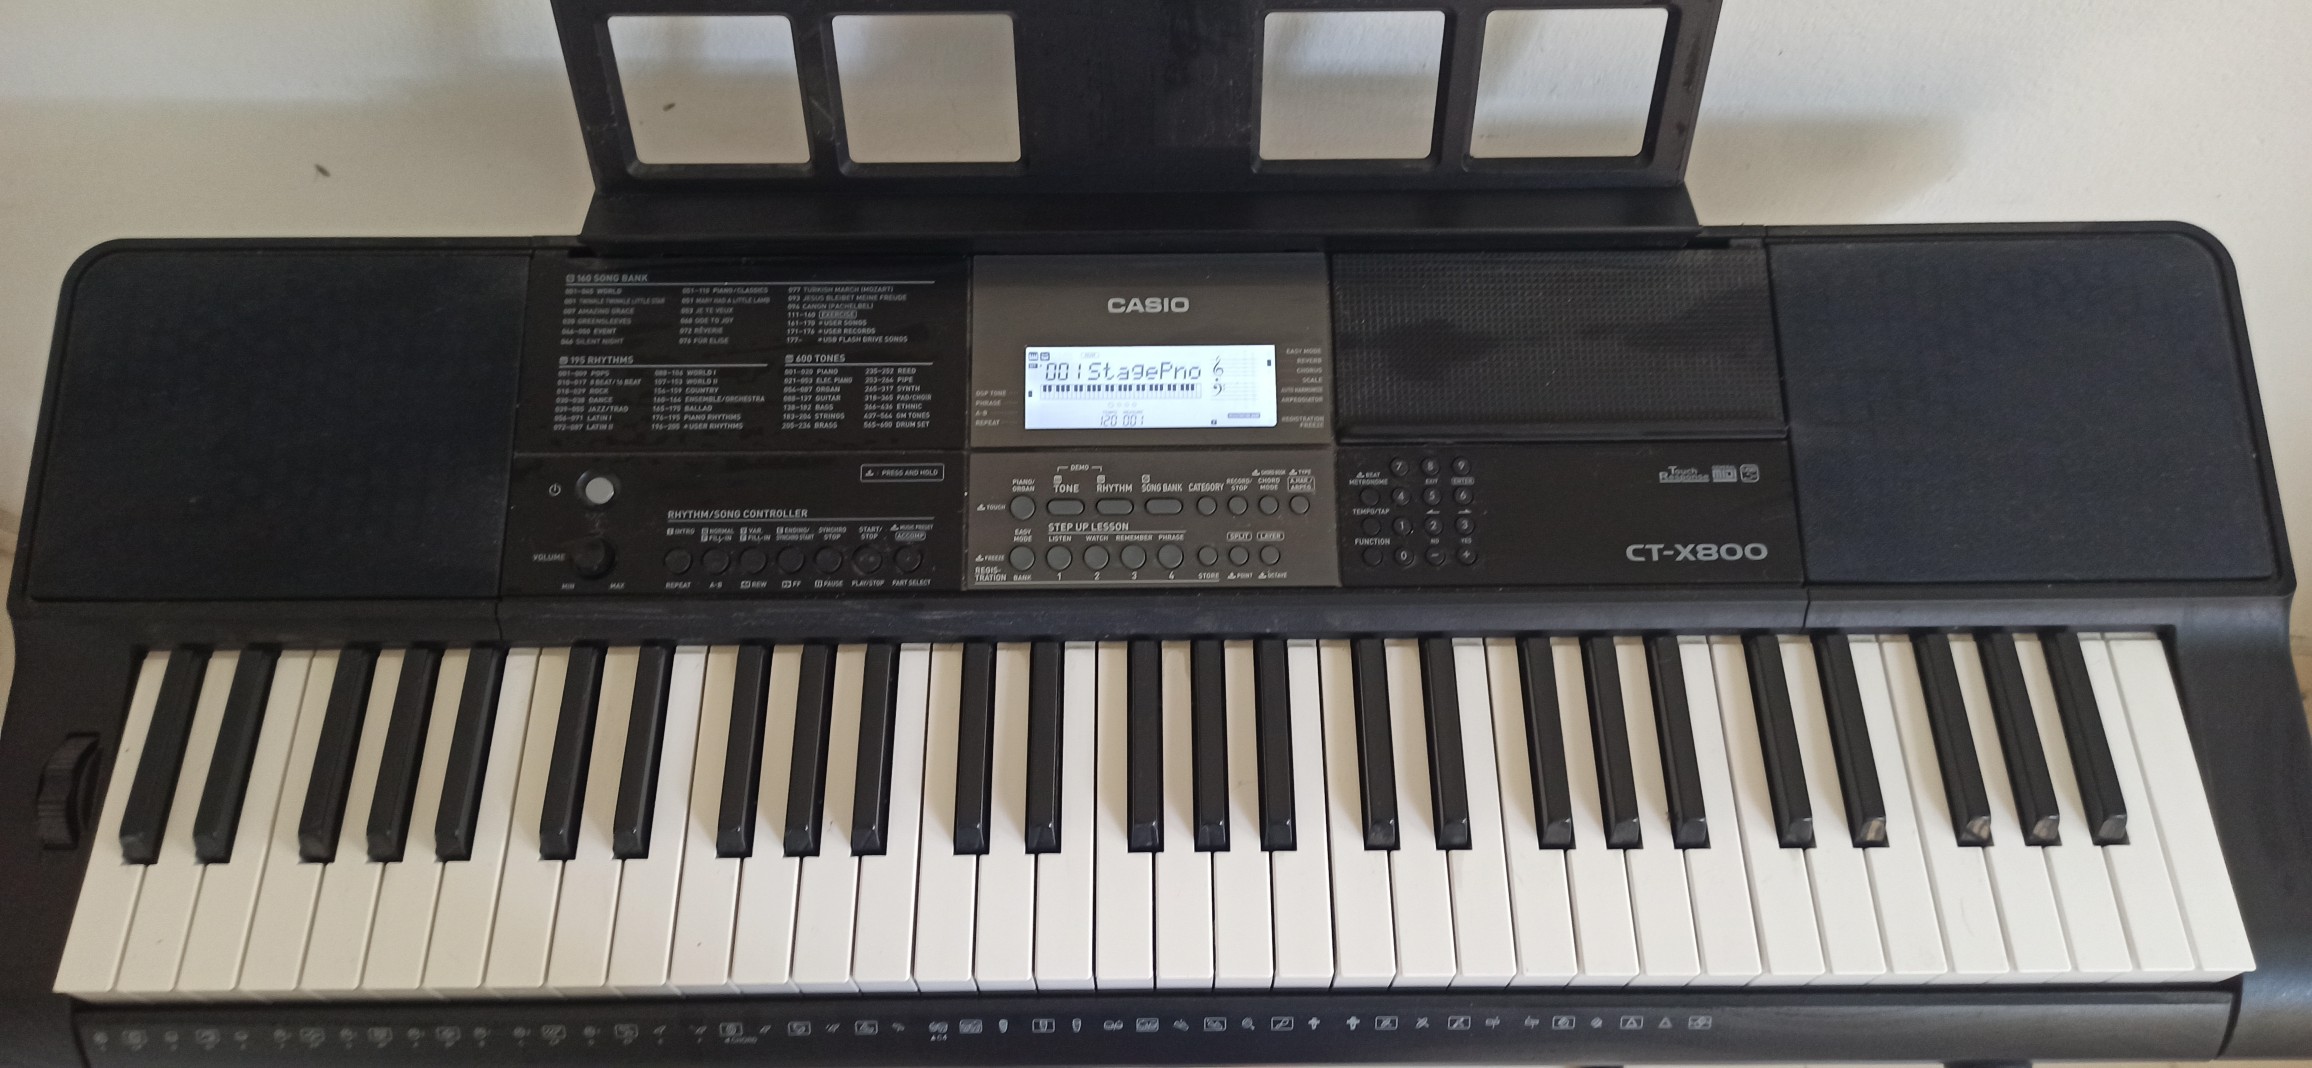 instrumentos musicales - Piano Casio CT- X800 con base RD$15,500 CASI NUEVO (solo meses de uso)